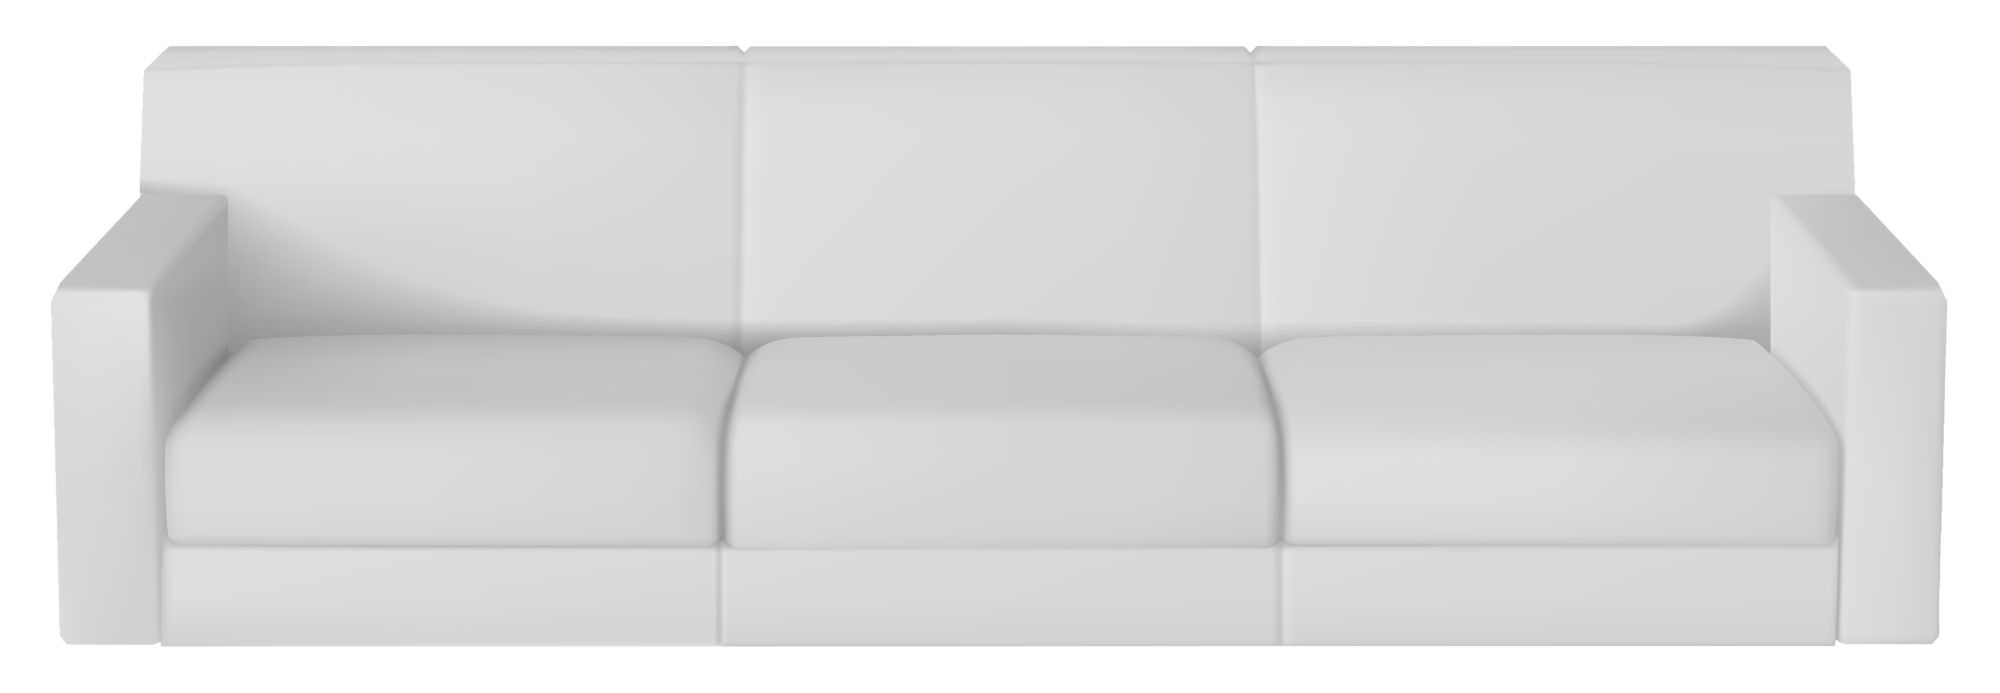 Καναπές σαλονιού άσπρος, με βαμβακερά υφασμάτινα μαξιλάρια, βιολογικός καθαρισμός Θεσσαλονίκη enviropest.gr